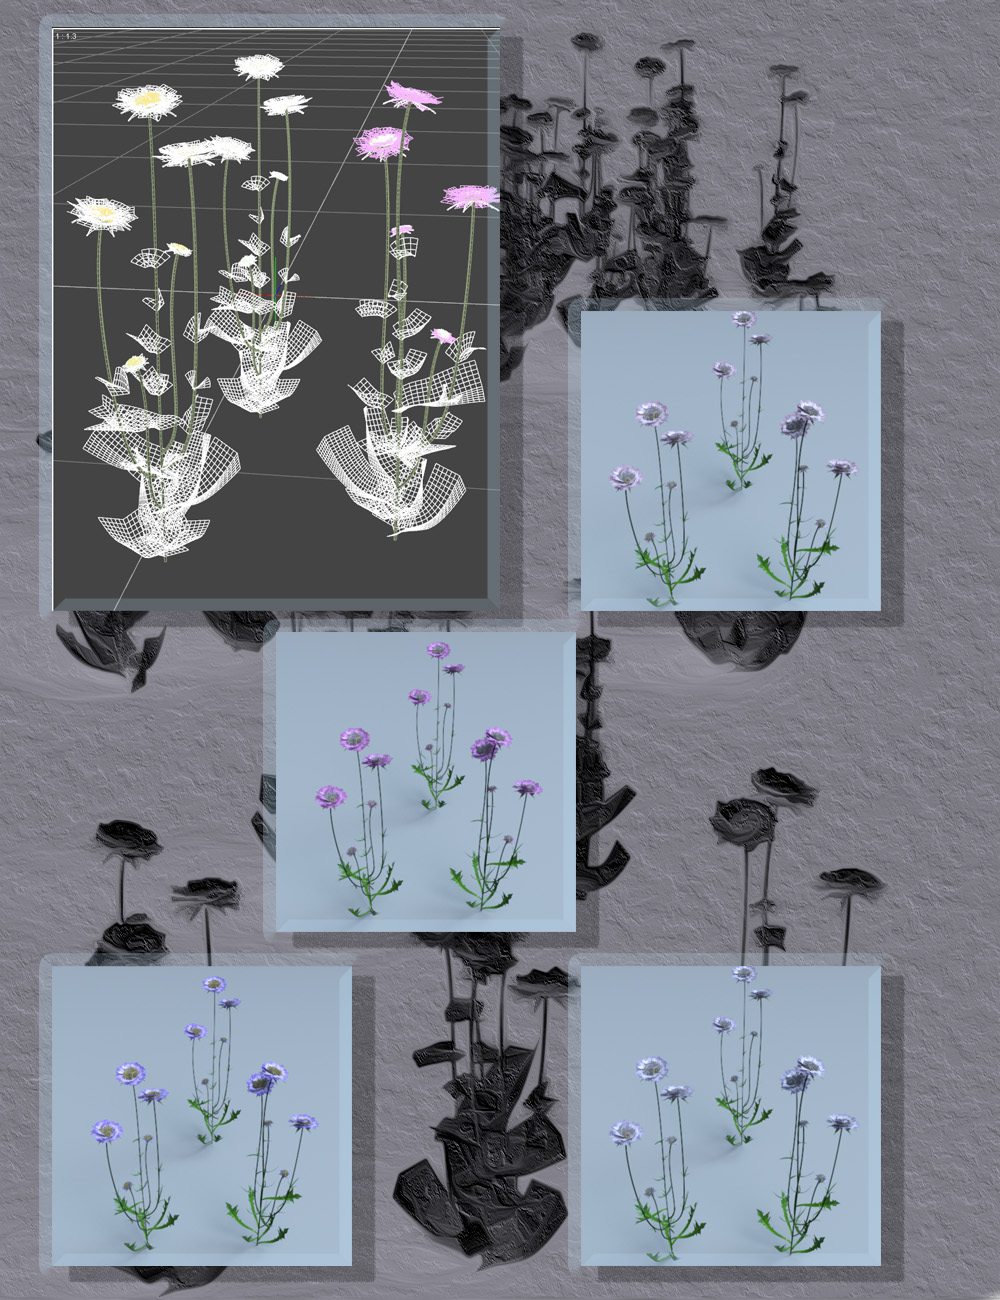 Meadow Flowers - Field Scabious by: MartinJFrost, 3D Models by Daz 3D